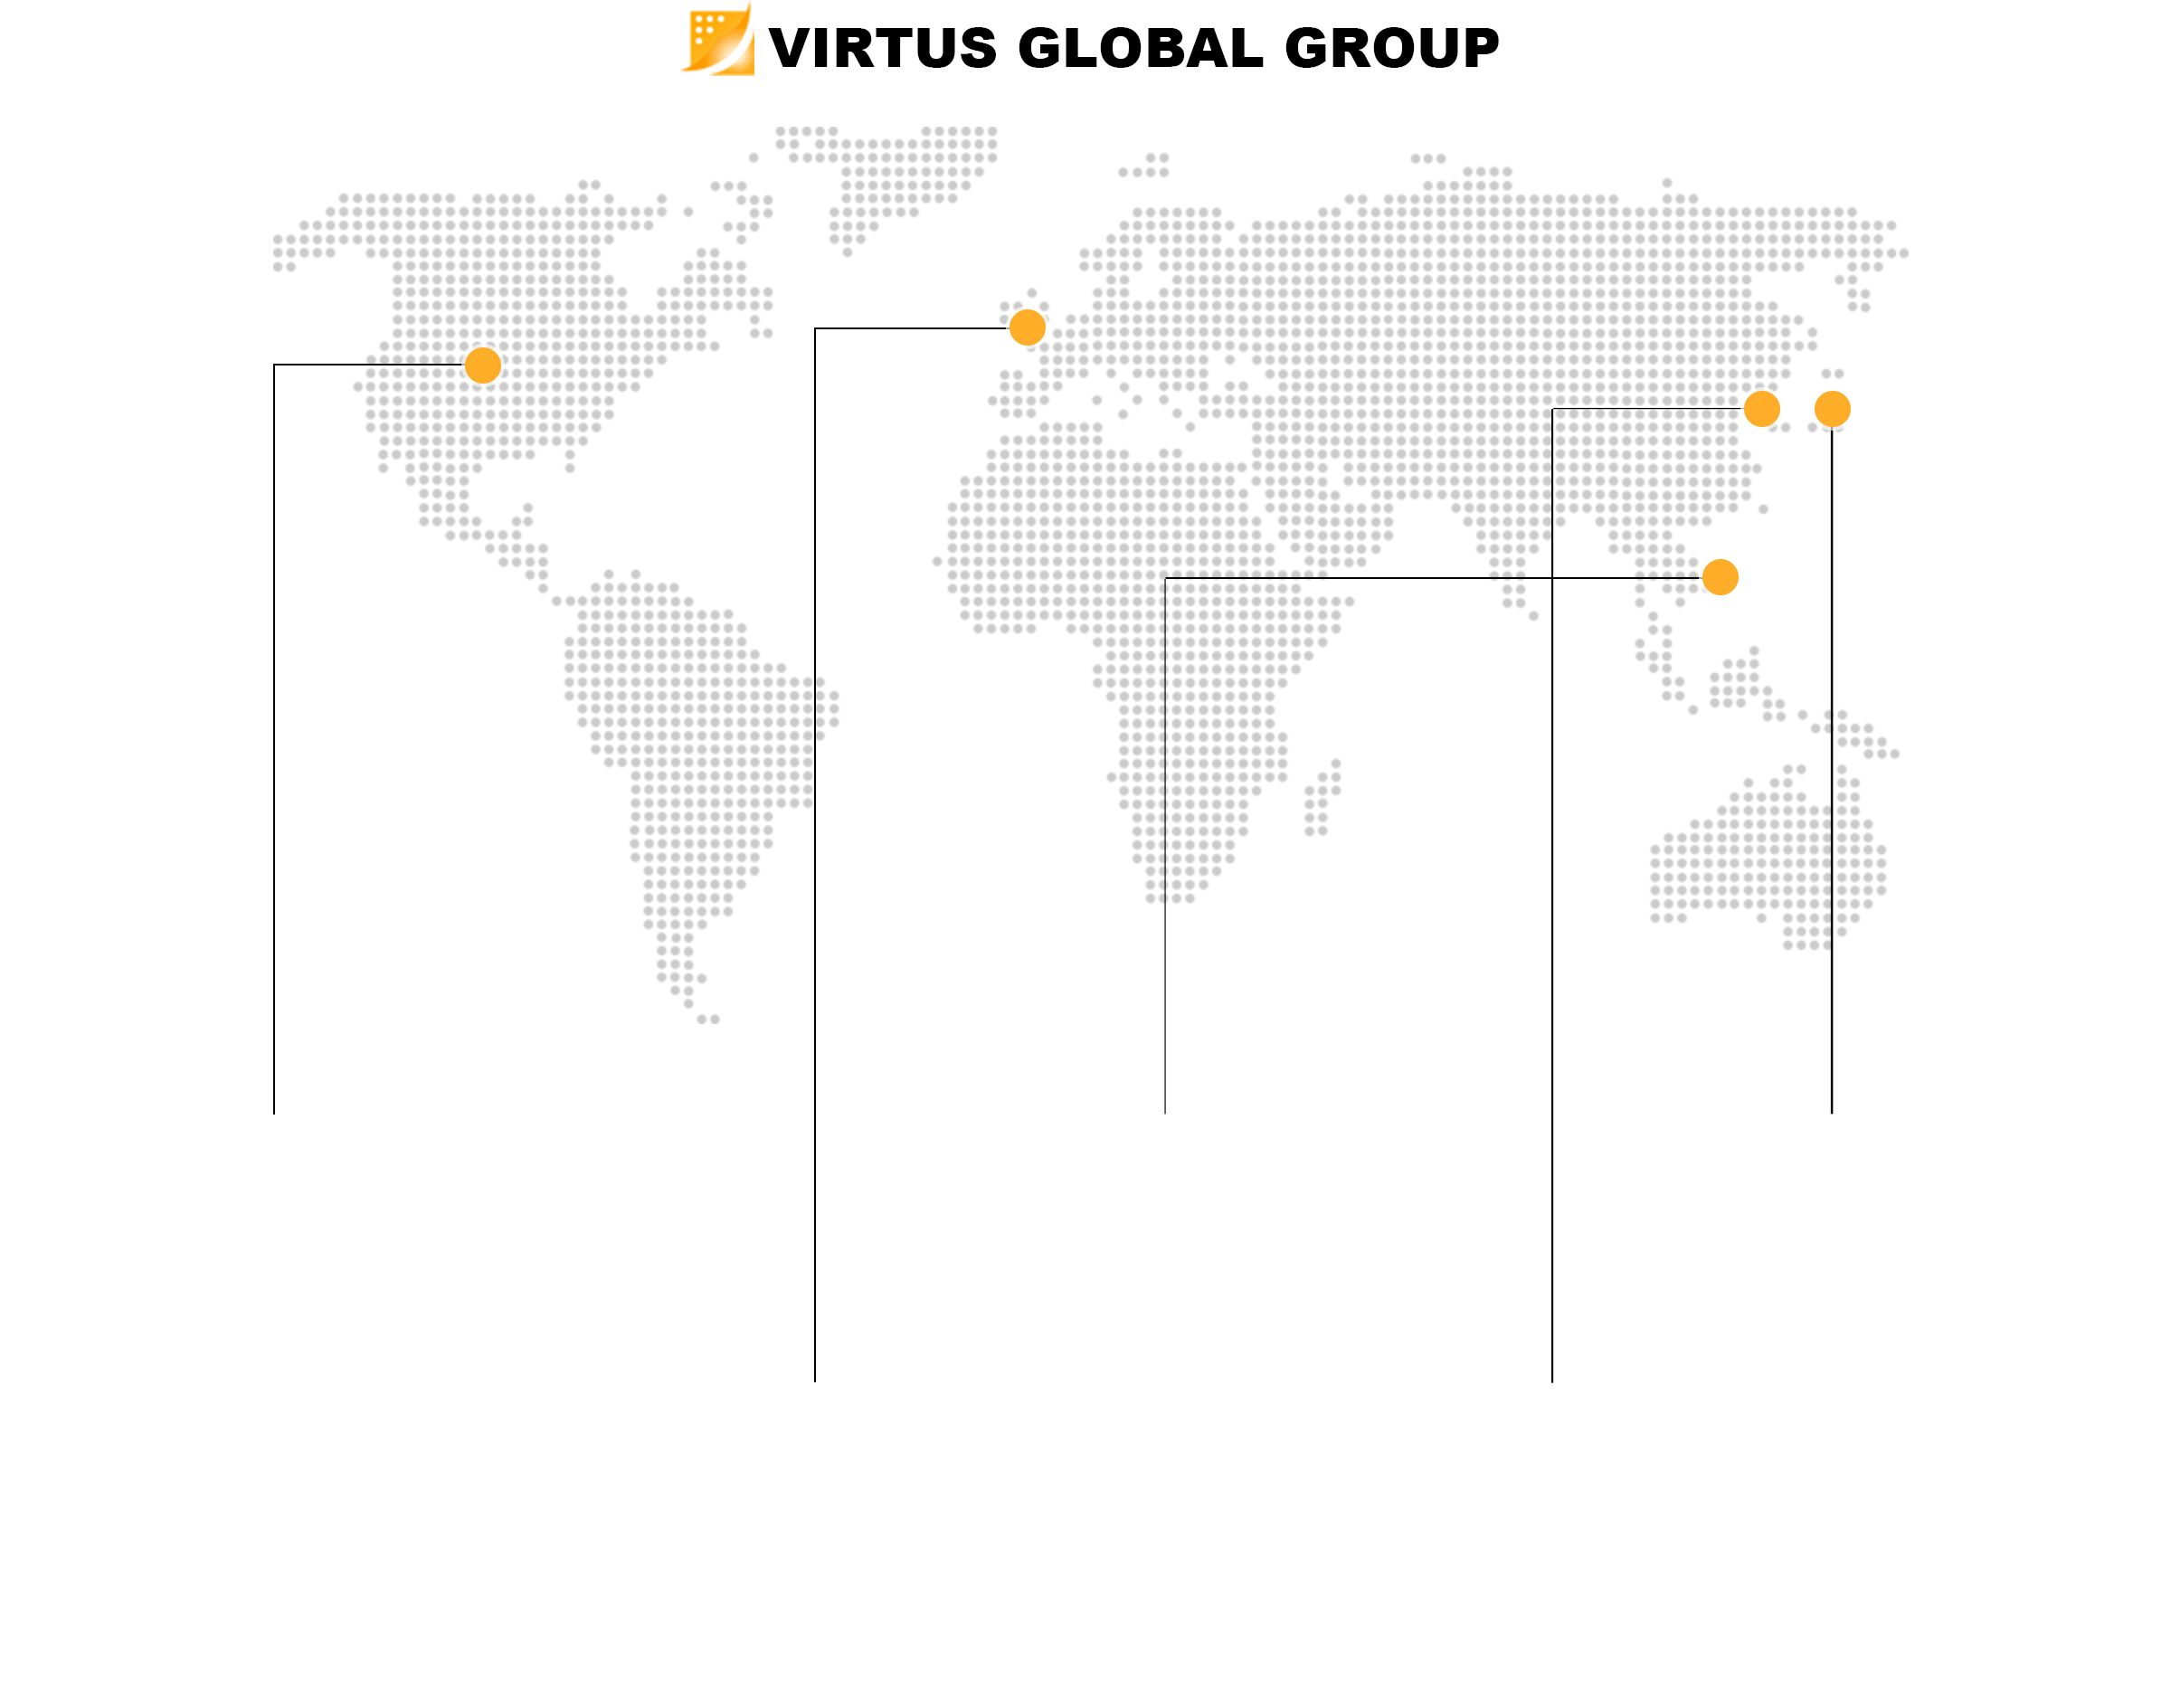 VIRTUS GLOBAL GROUP